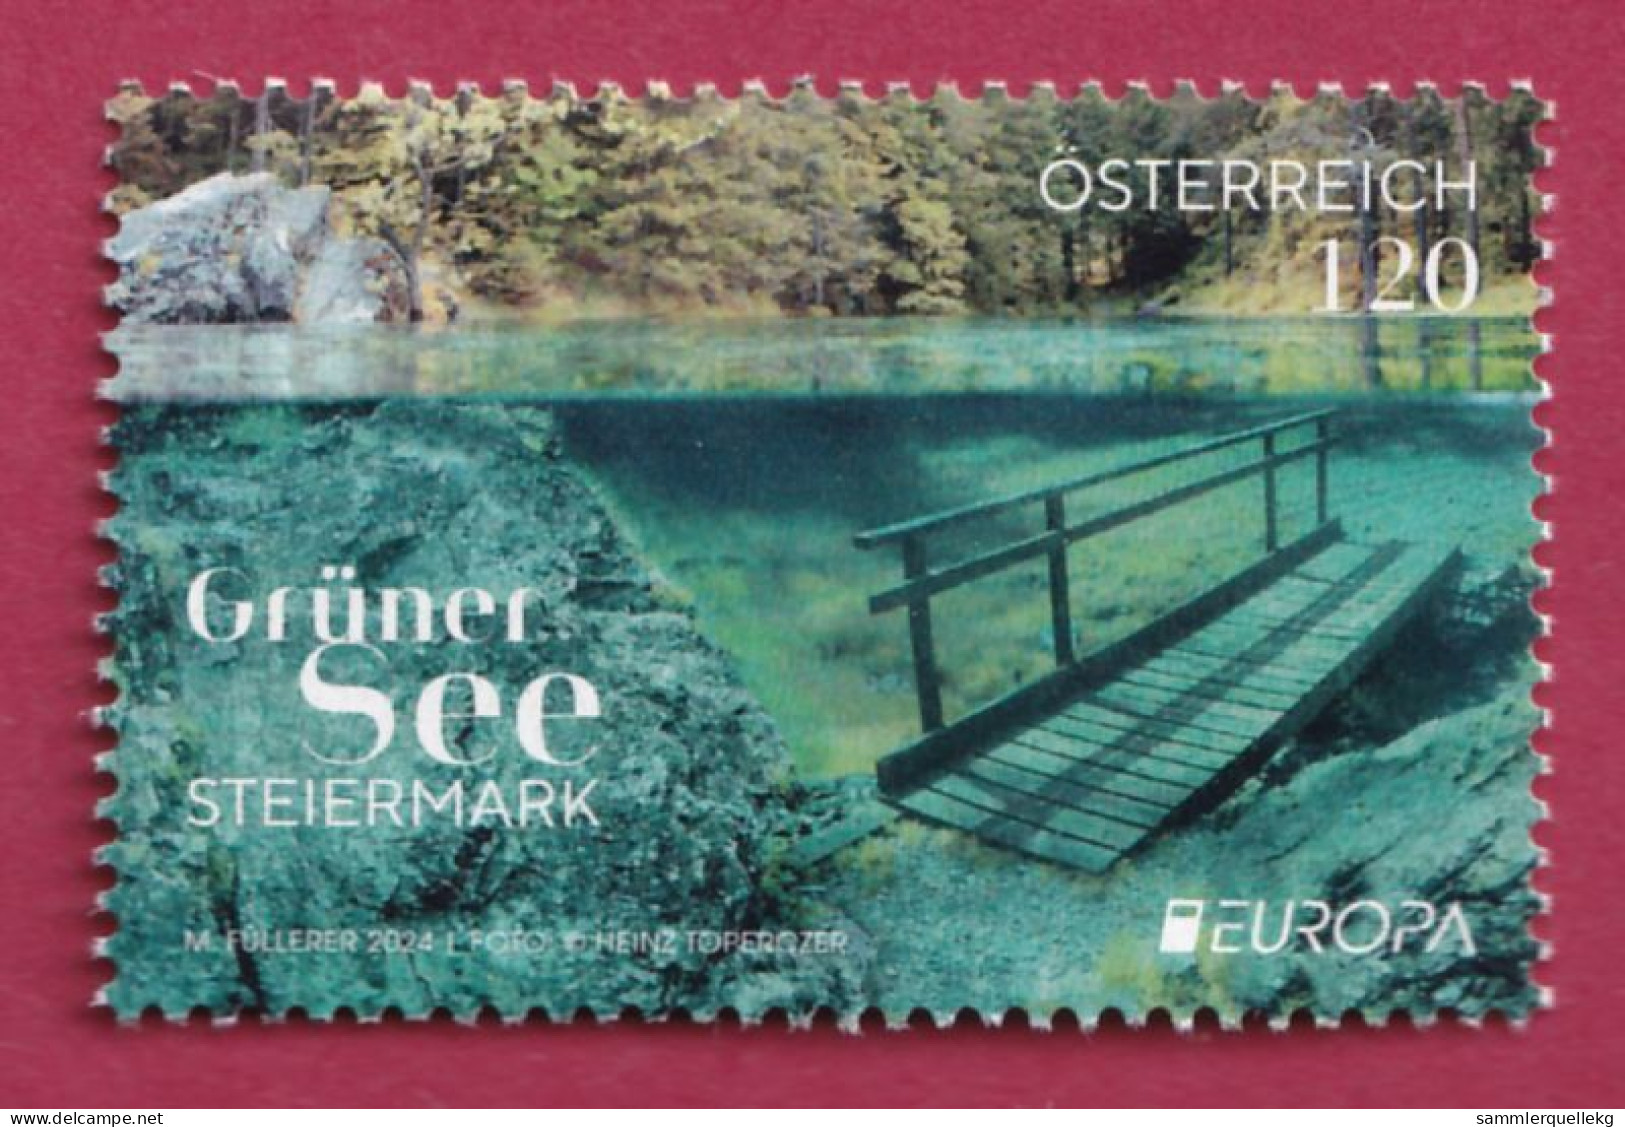 Österreich Europa 2024: Grüner See Postfrisch - Ungebraucht